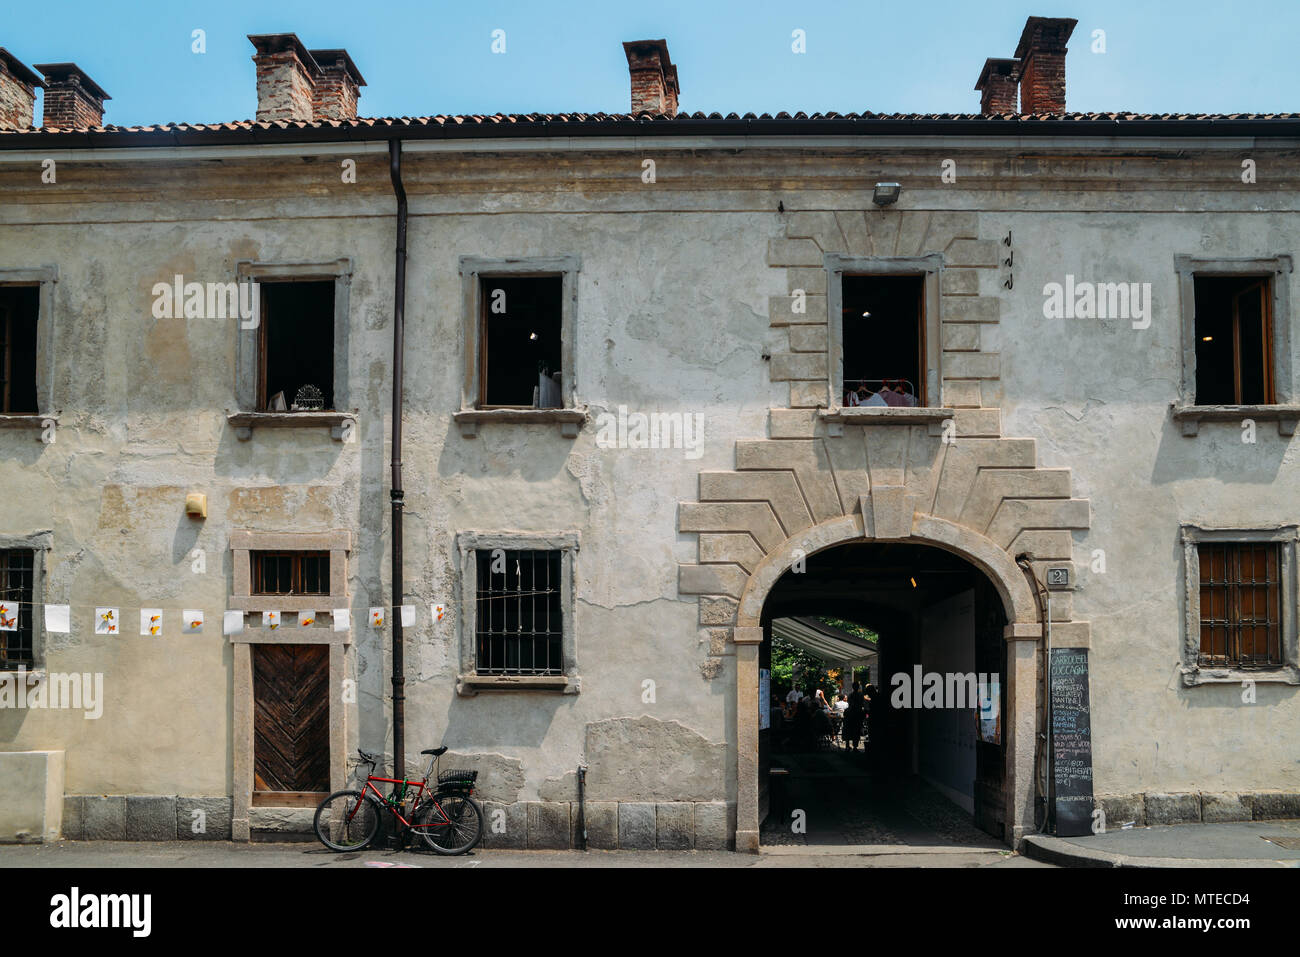 Msot Cascina Cuccagna ist die Zentrale der öffentlichen Bauernhäuser in der Gegend von Mailand und war Gegenstand einer beispielhaften Stadterneuerung Projekt an der Restaurierung des 17. Jahrhunderts Bauernhof ausgerichtet Stockfoto